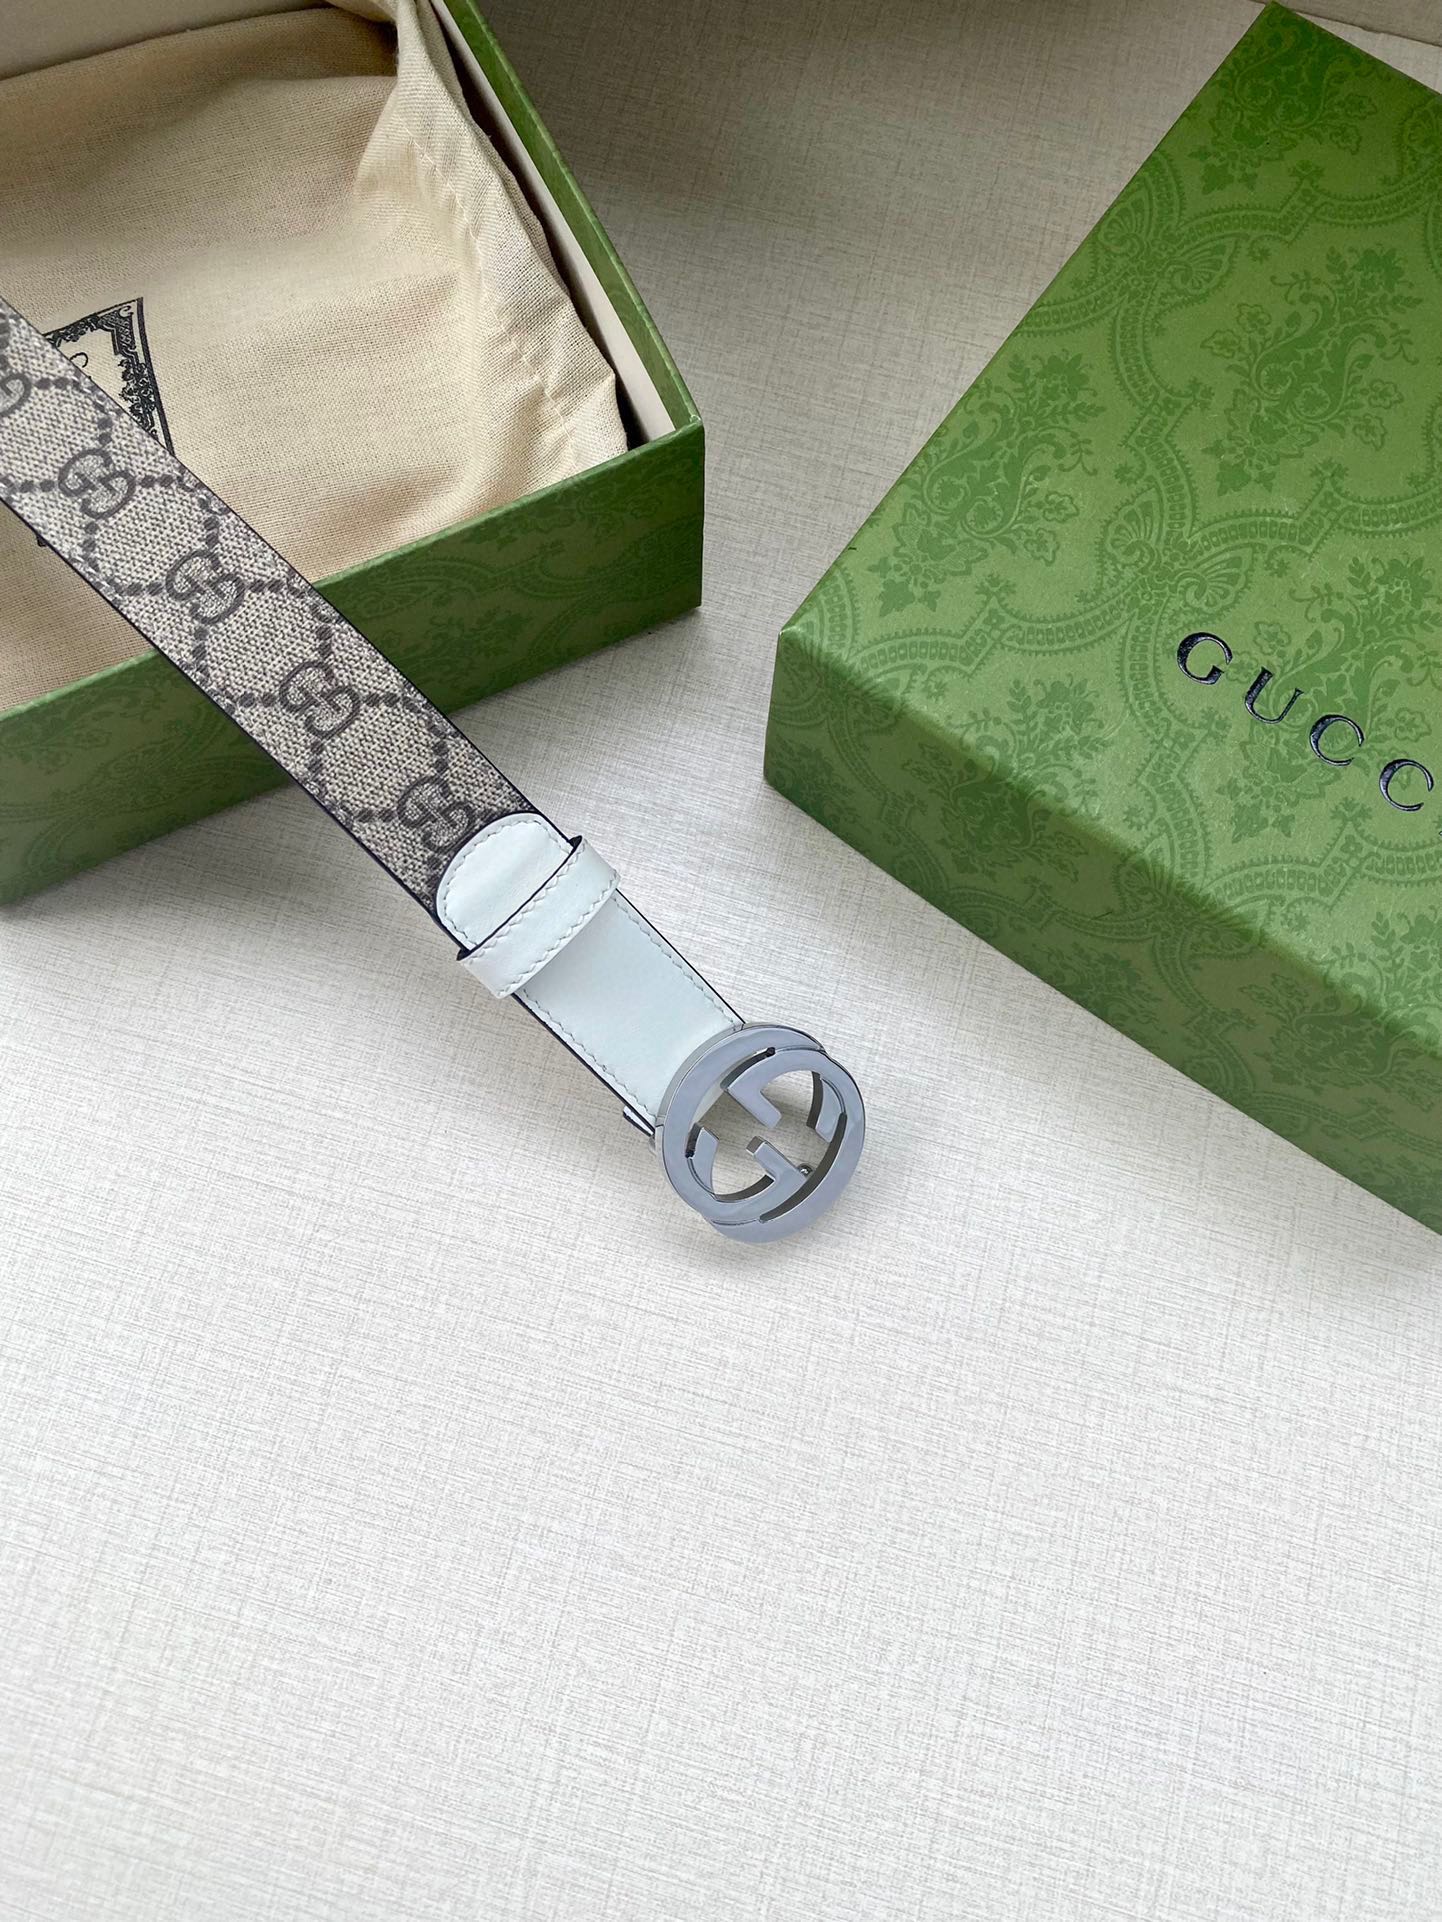 宽度3.0cmGUCCI双G字母交织图案配件作为品牌经典元素表达了对品牌创始人GuccioGucci先生